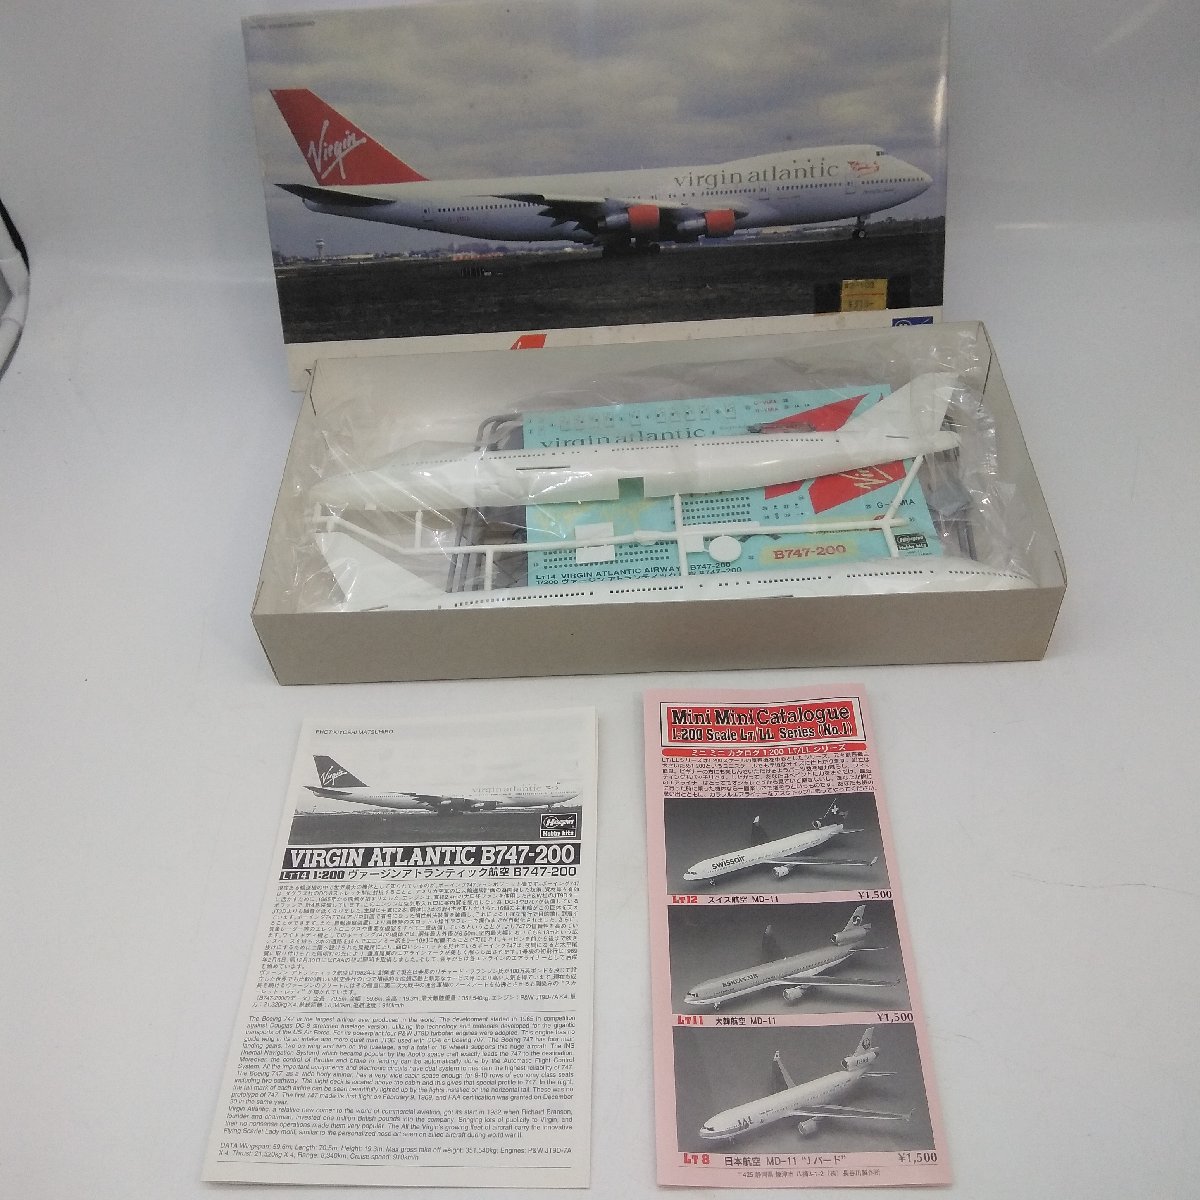 1043【組立品】ハセガワ ヴァージン アトランティック航空 ボーイング747-200 1/200 プラモデル 飛行機 模型_画像1